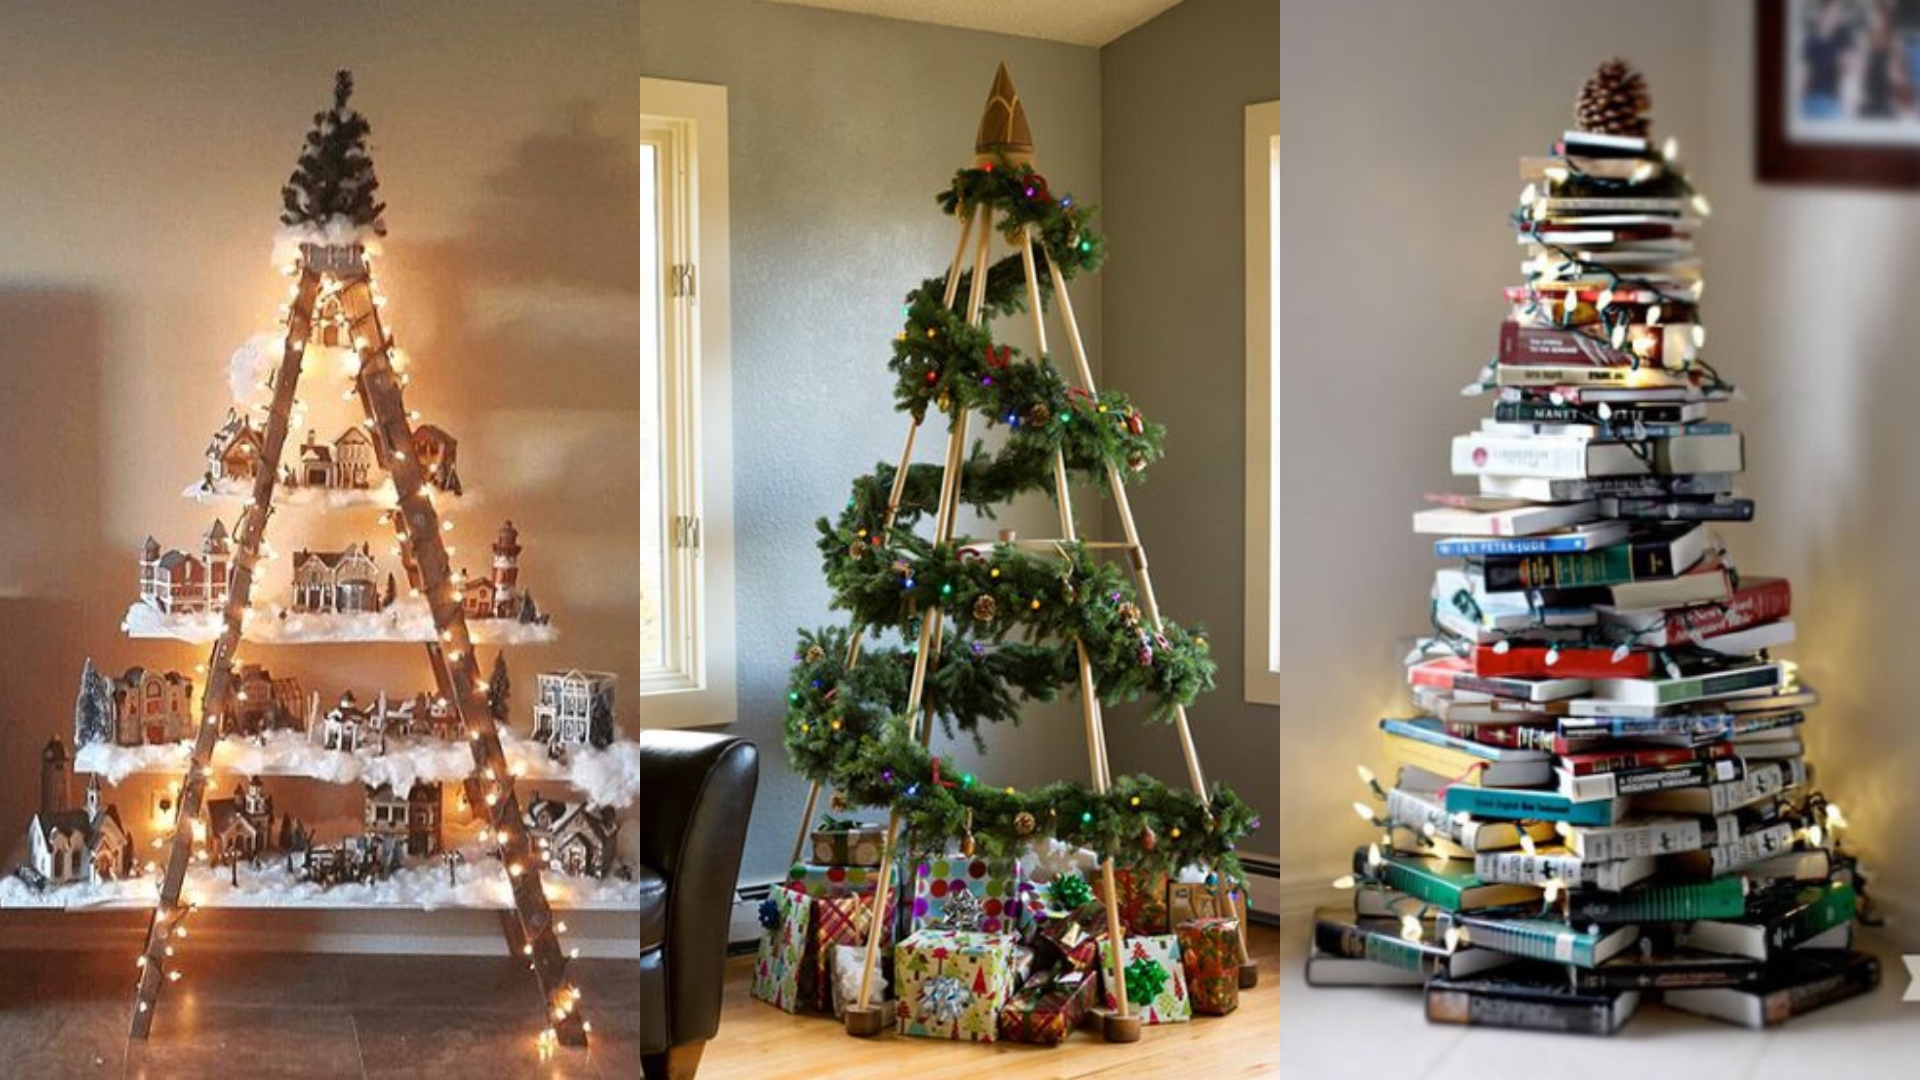 Bora inventar? 20 opções de árvores de Natal diferentonas para fazer uma  decoração criativa